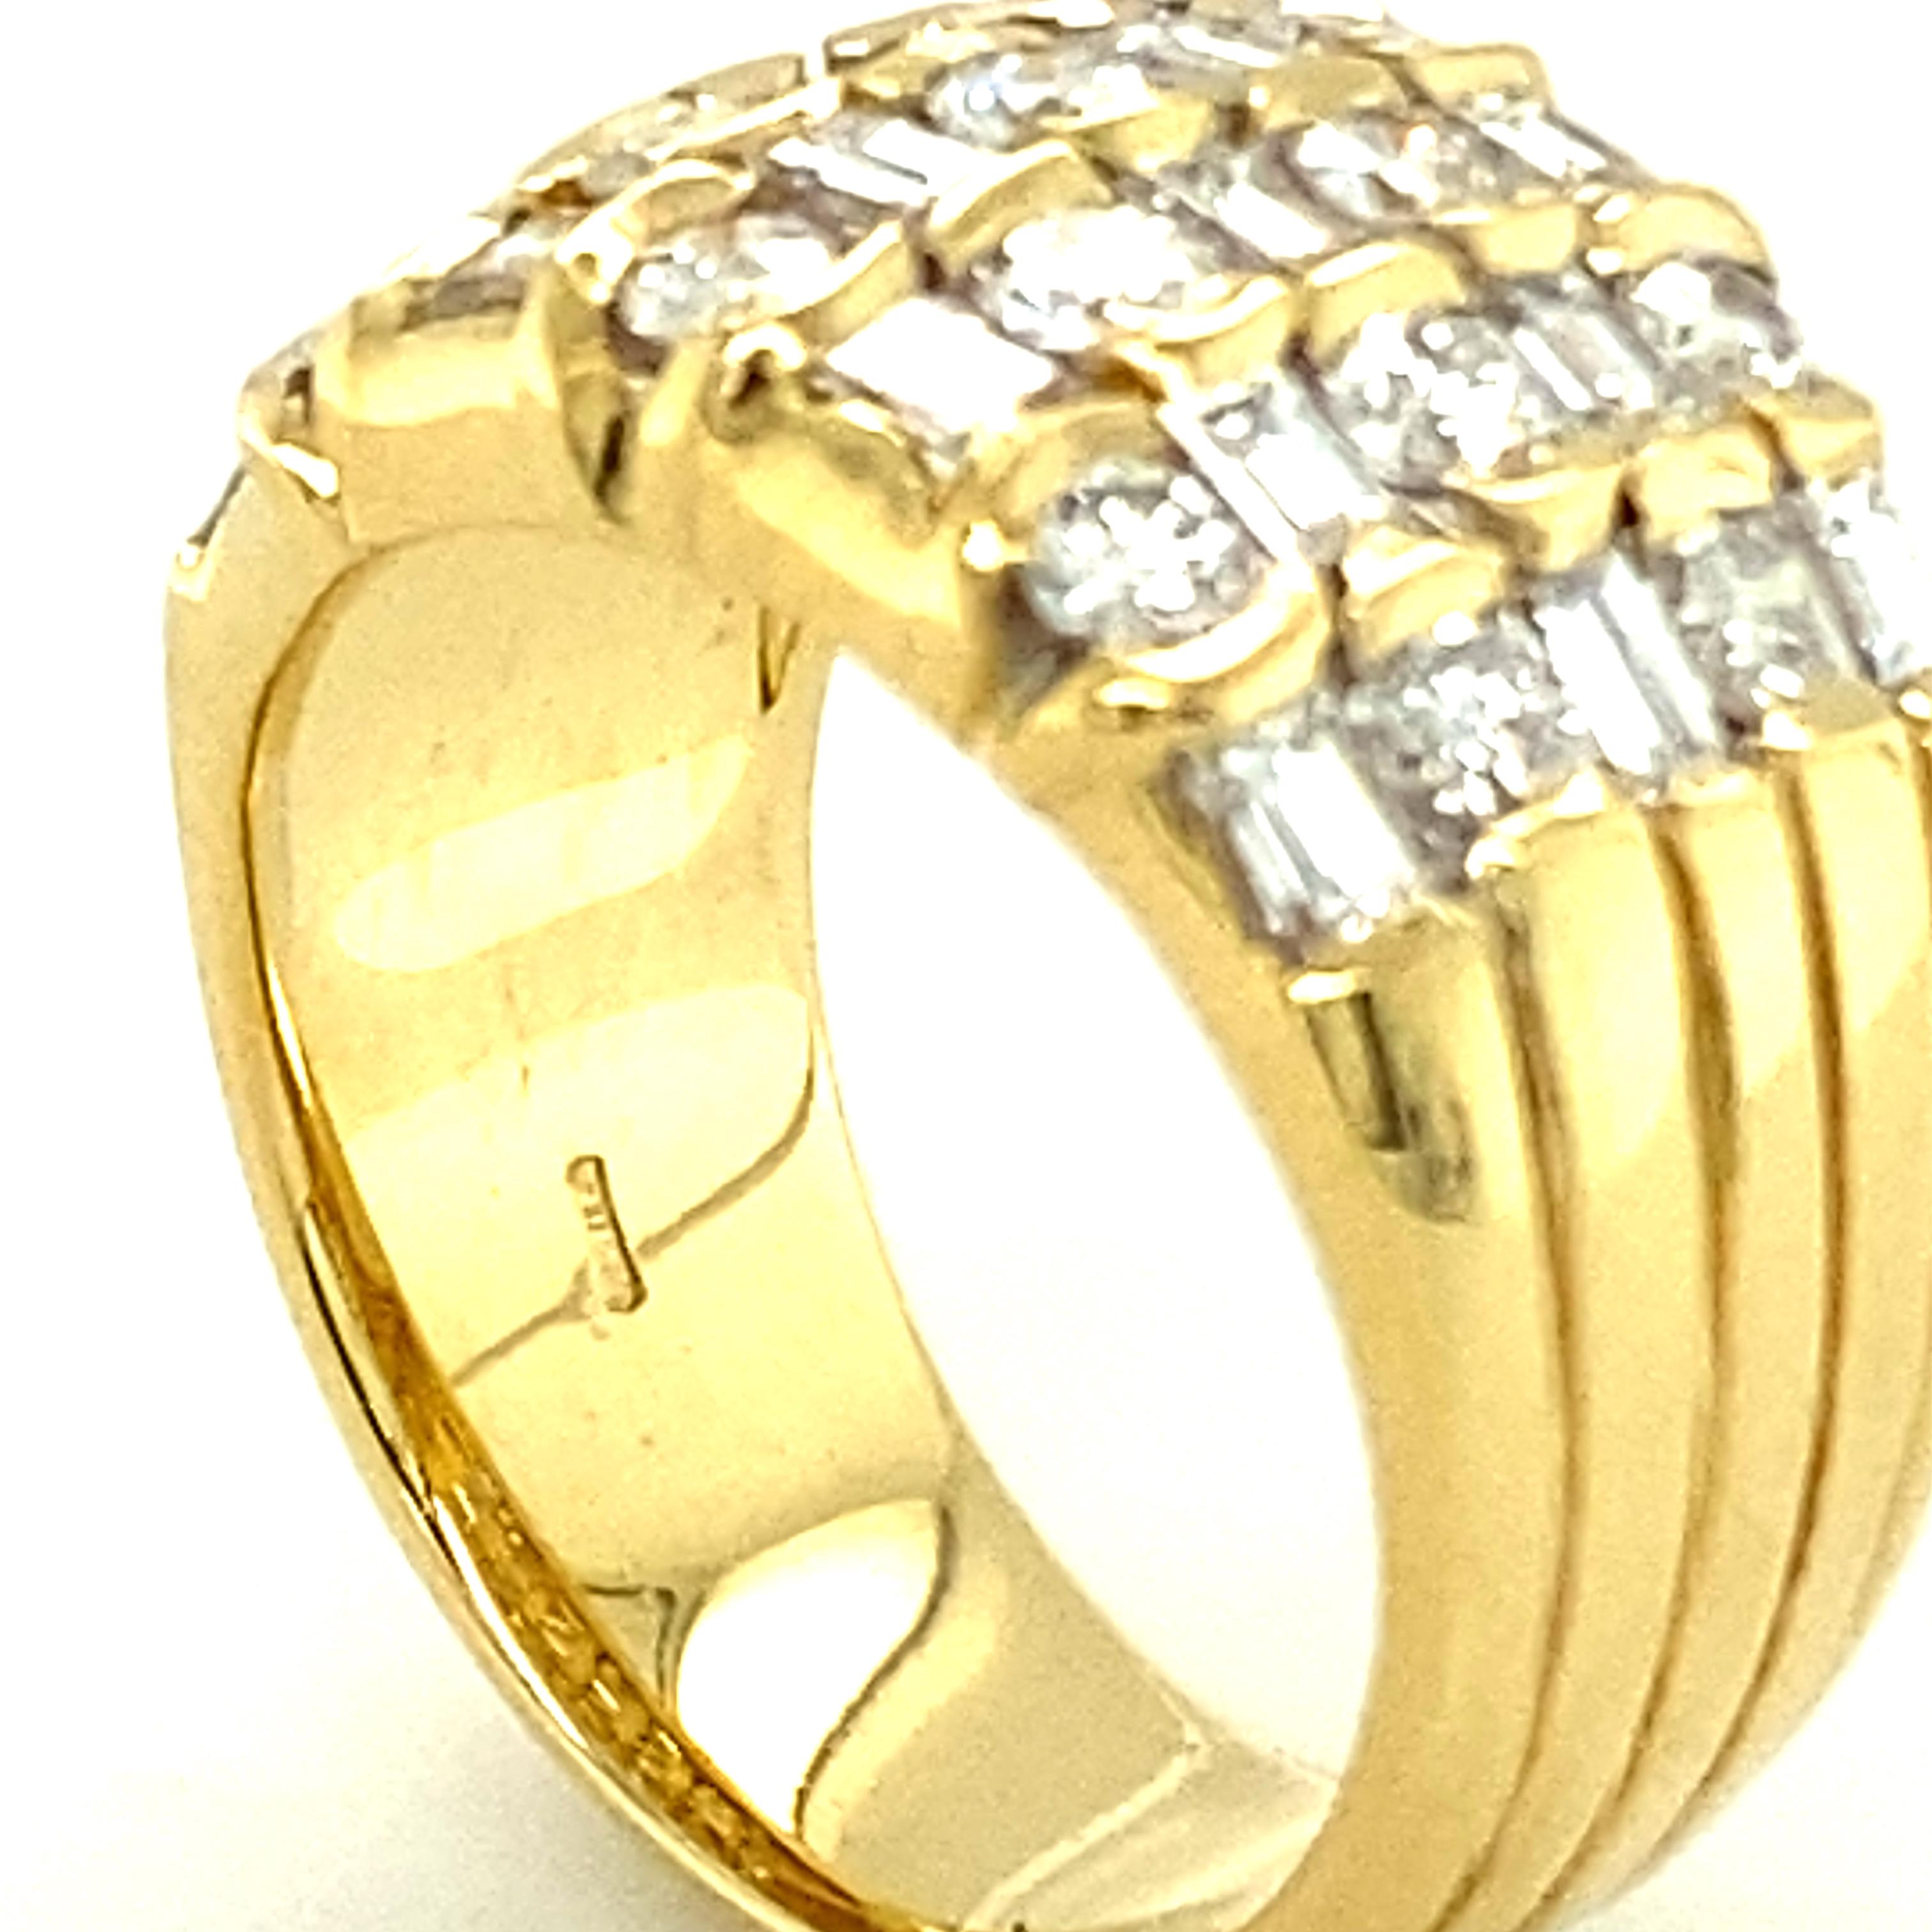 Sparkling Diamond Ring in 18 Karat Yellow Gold 3